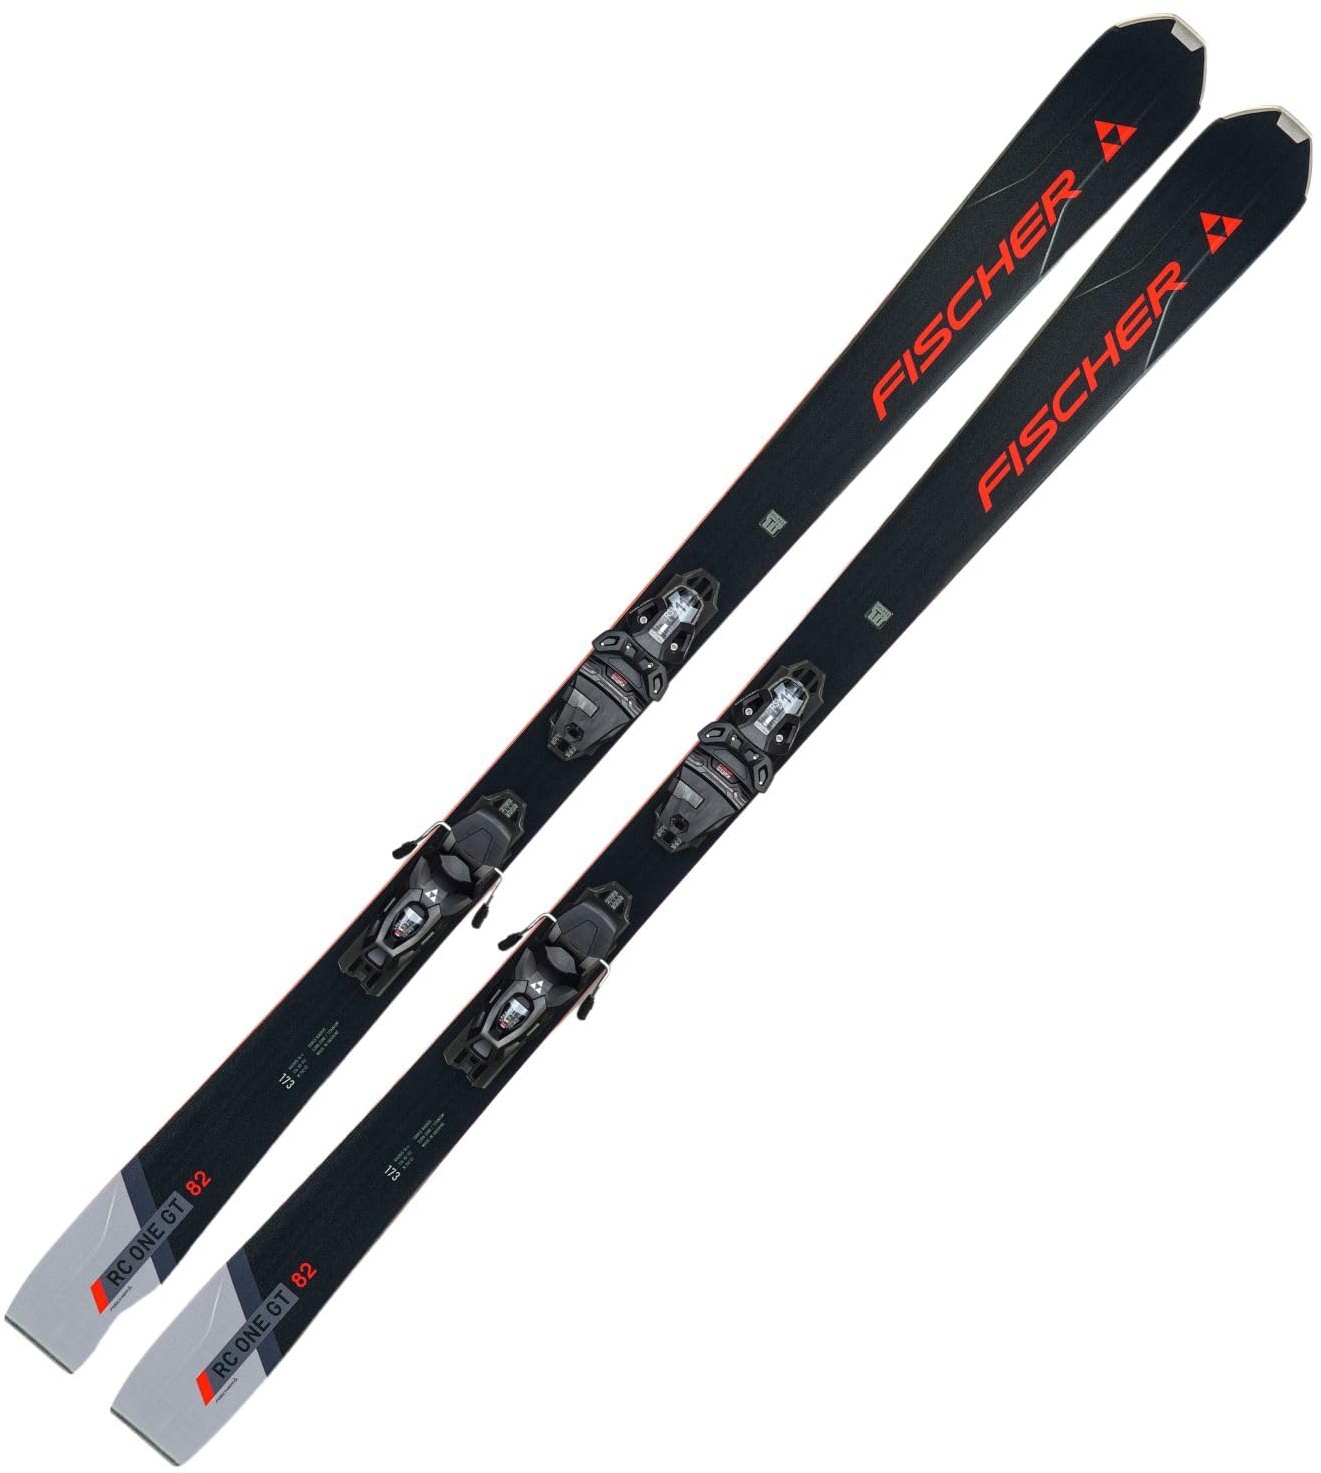 Ski Alpinski Carvingski Allmountain Rocker - Fischer RC One 82 GT TPR - 180cm - inkl. Bindung RSW11 PR Z3-11 - Modell 2024 - All Mountain Ski - geeignet für Fortgeschrittene bis Profis